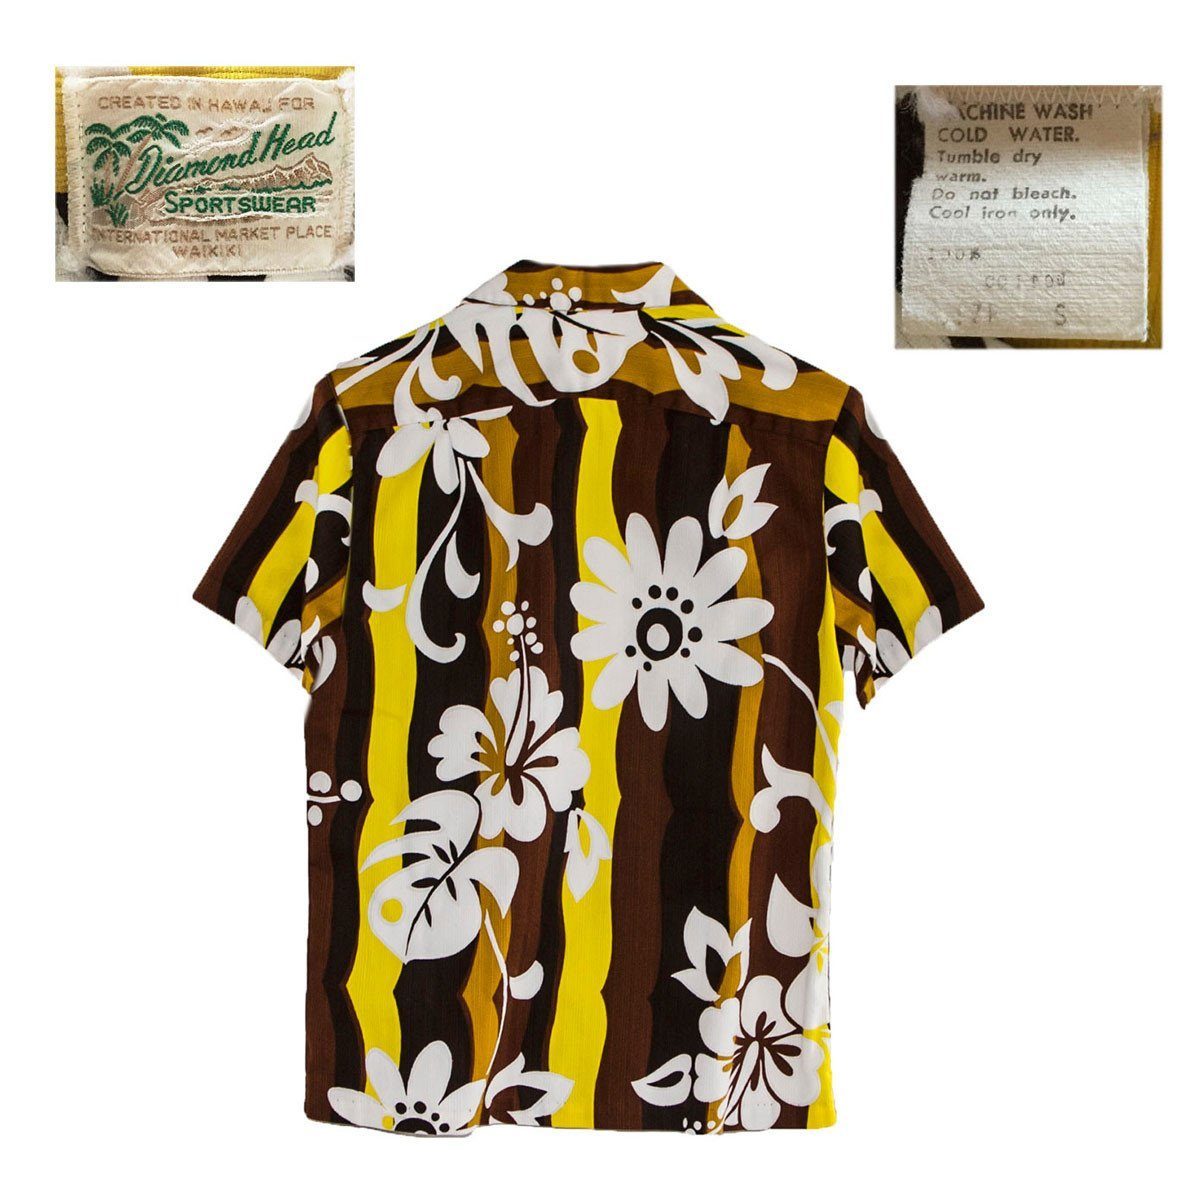 1960s Hawaiian Shirt, Diamond Head Sportswear, Size Extra Small